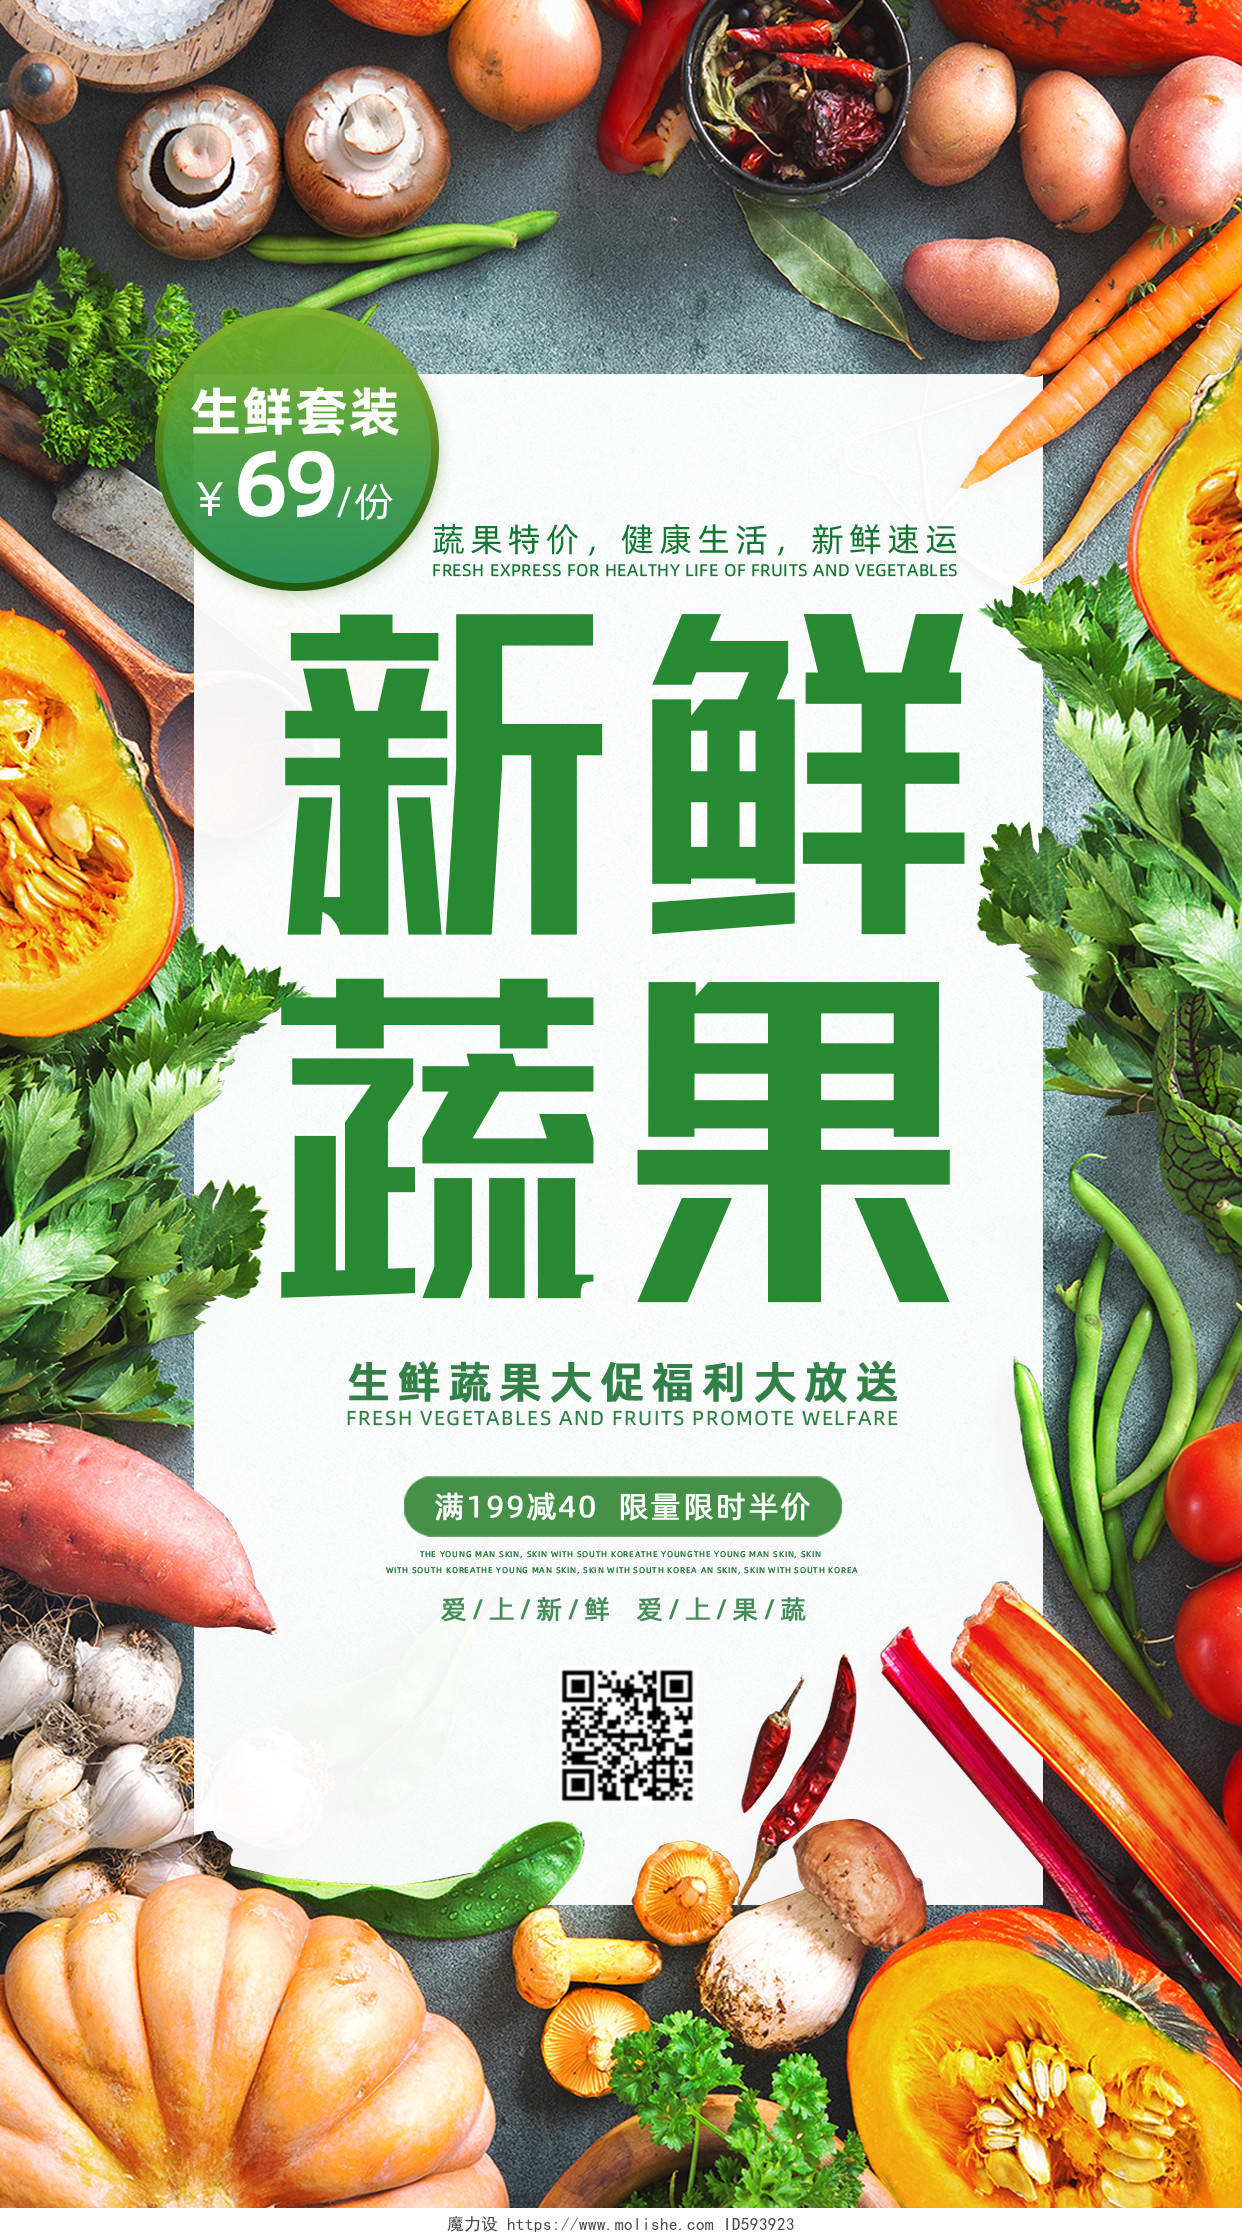 简约绿色新鲜蔬果水果生鲜手机文案海报